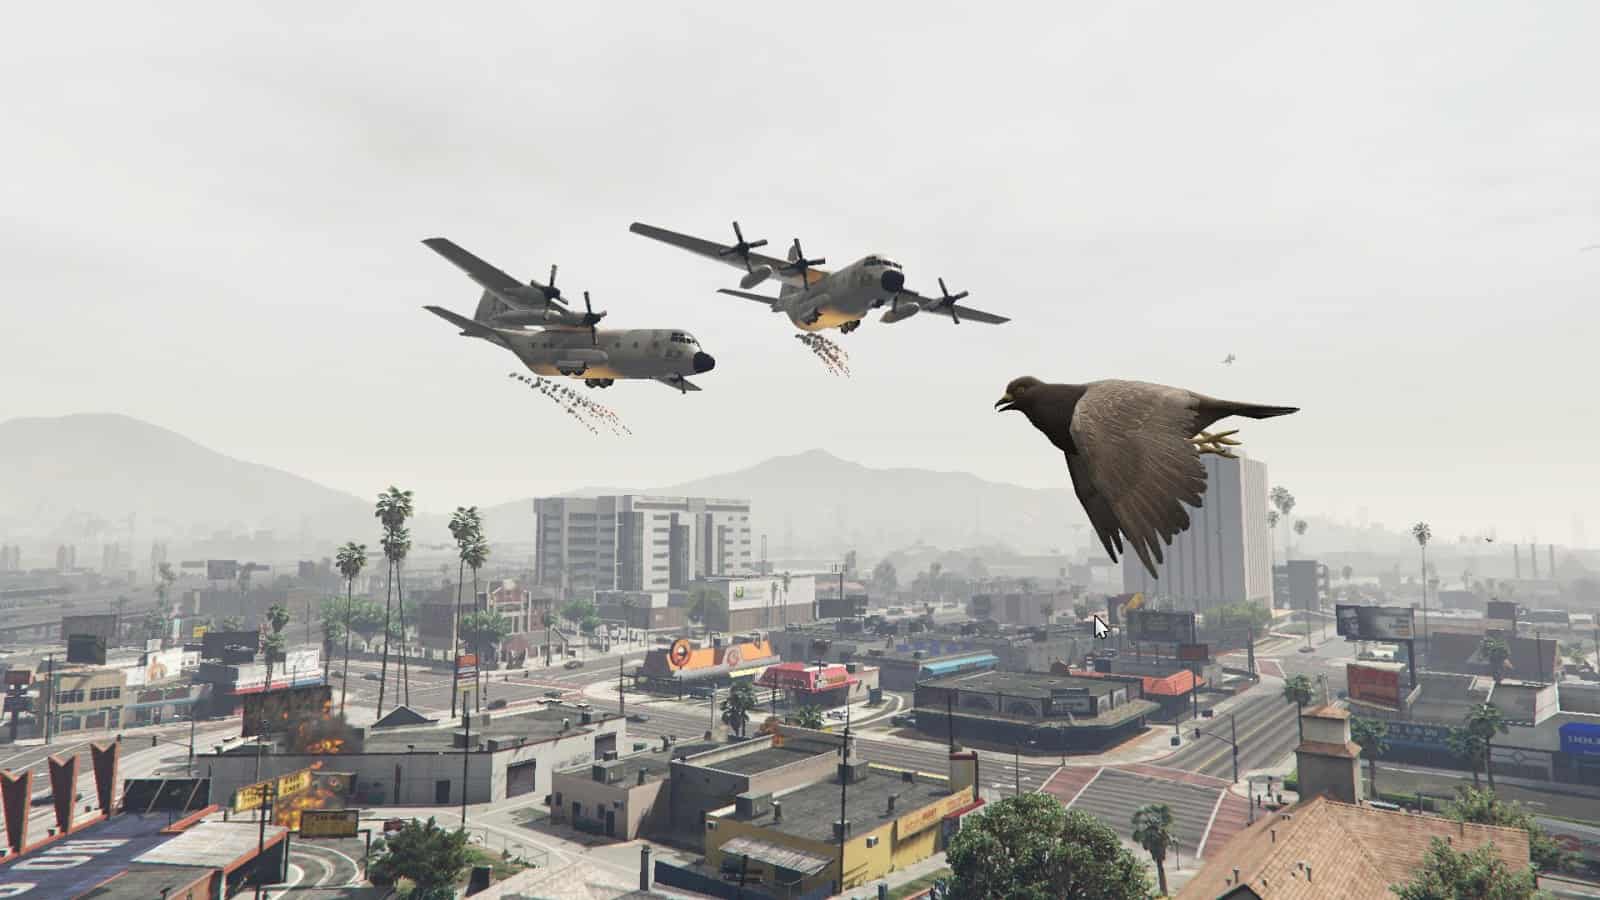 Les meilleurs mods de GTA 5 - Angry Planes